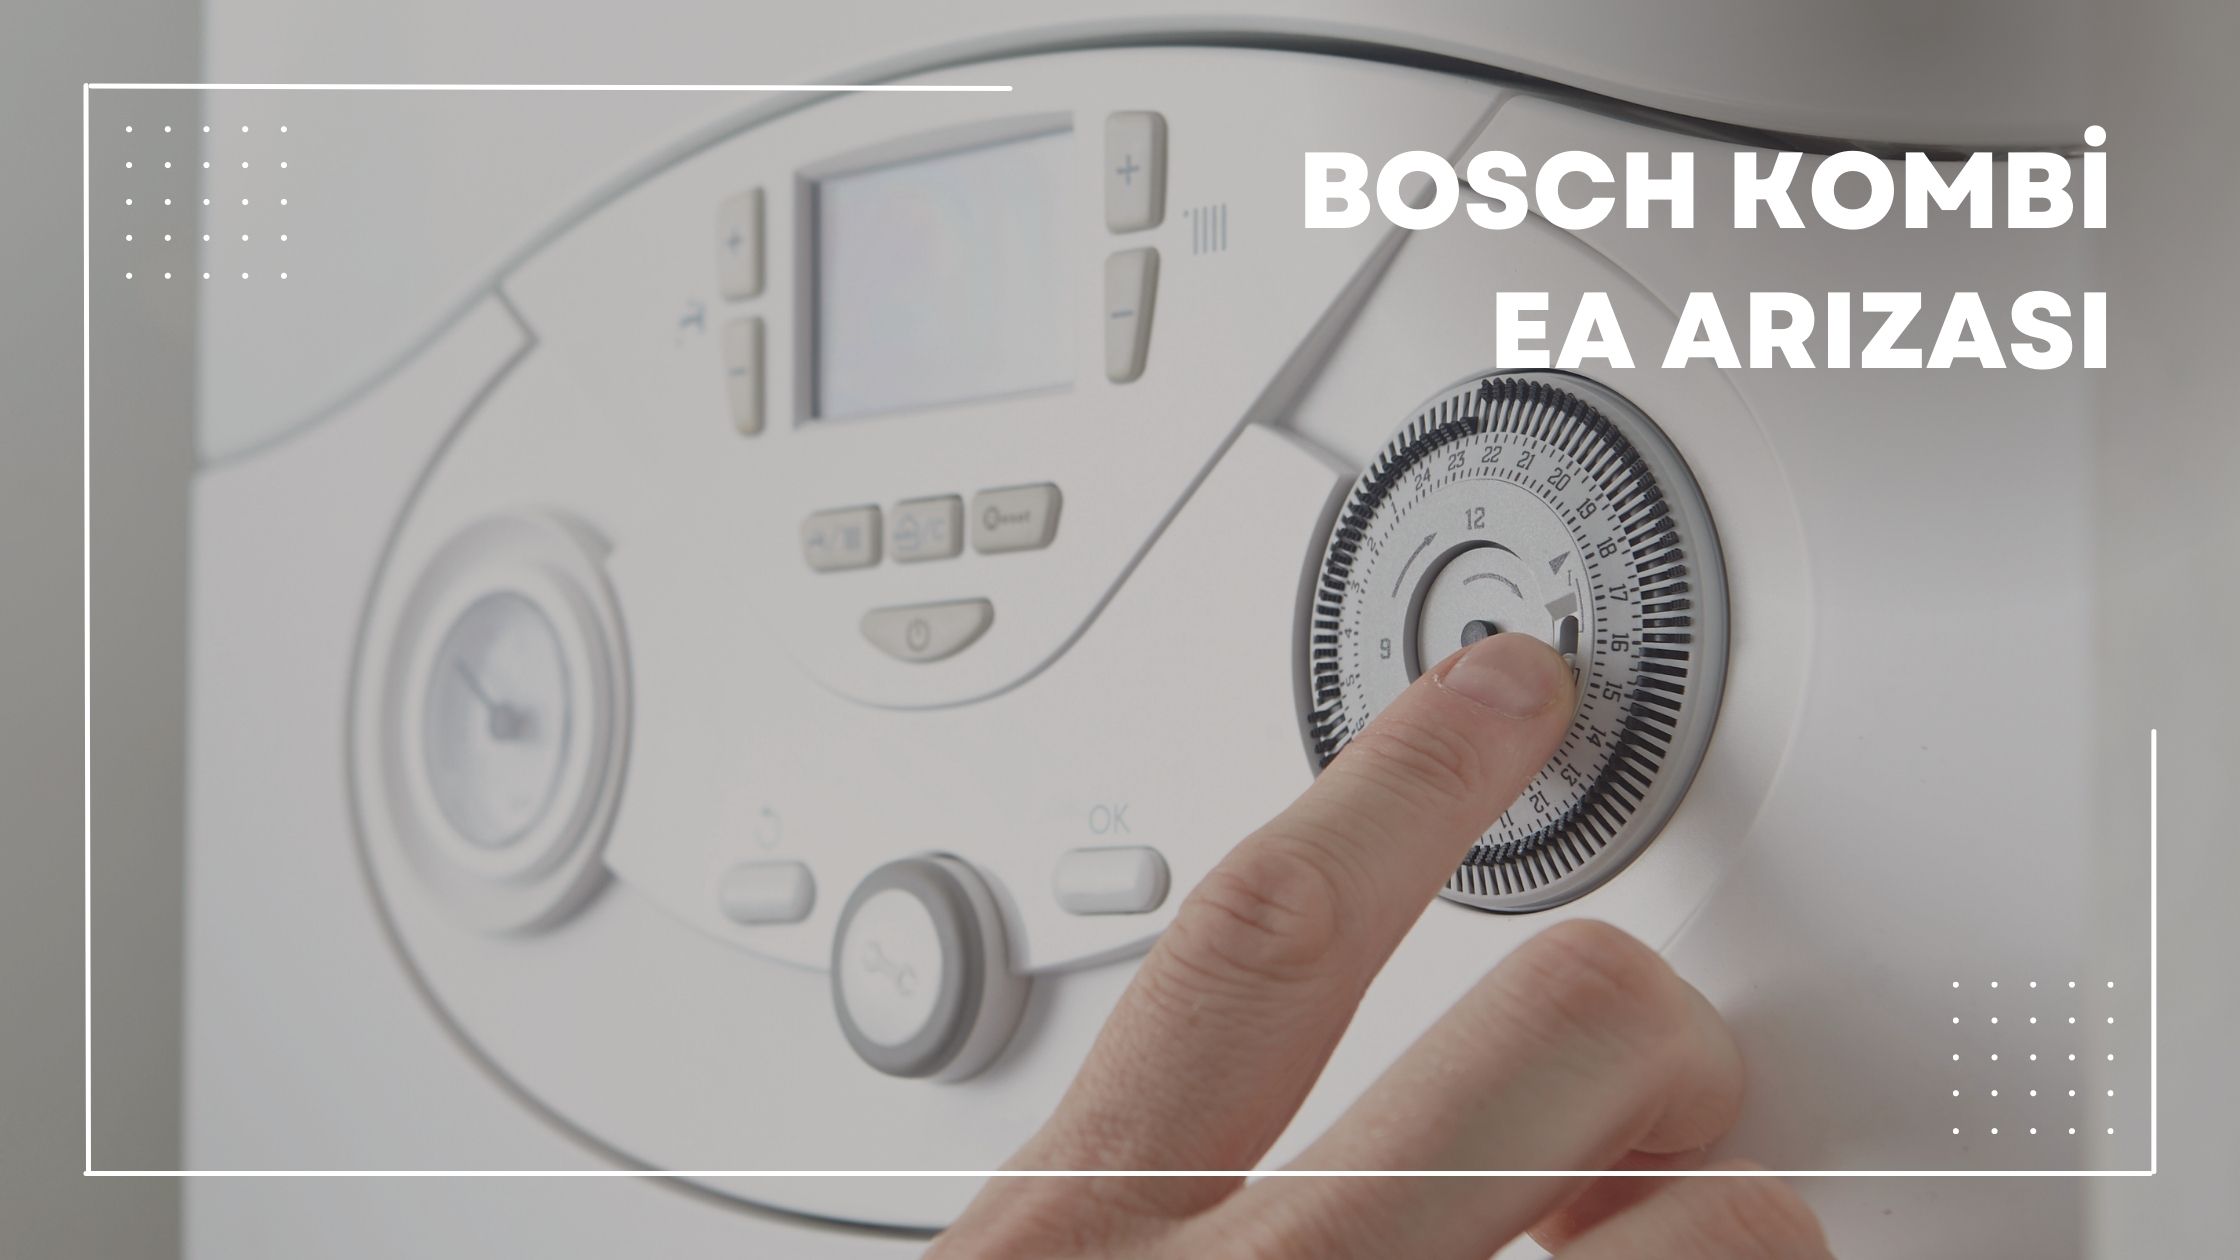 Bosch Kombi Ea Arızası